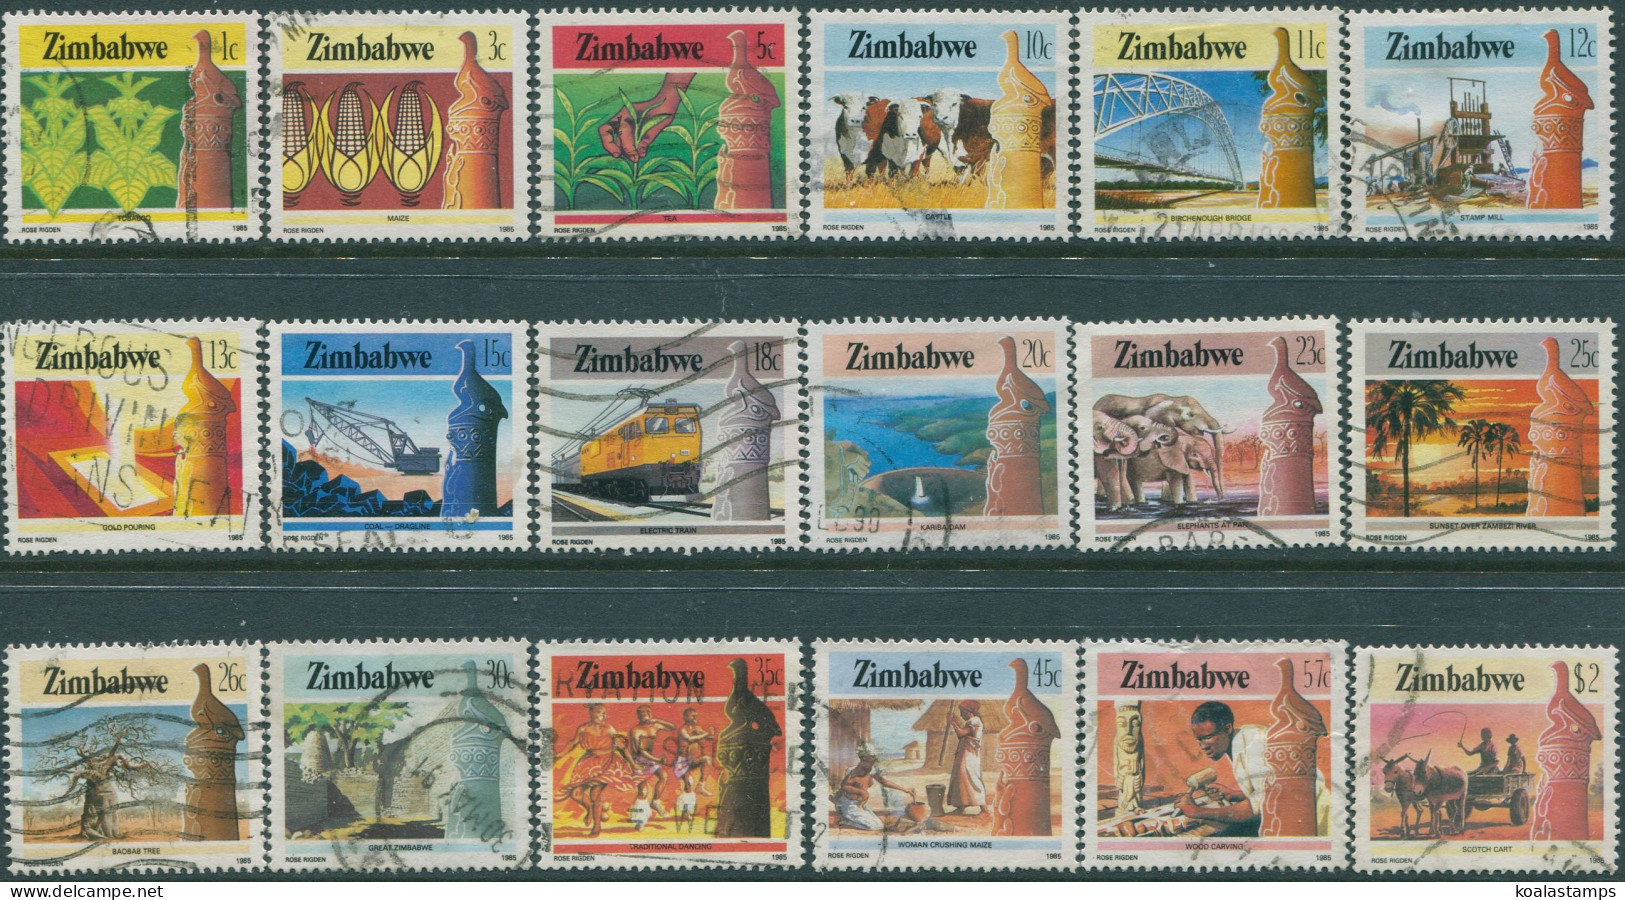 Zimbabwe 1985 SG659-679 National Infrastructure (18) FU - Zimbabwe (1980-...)